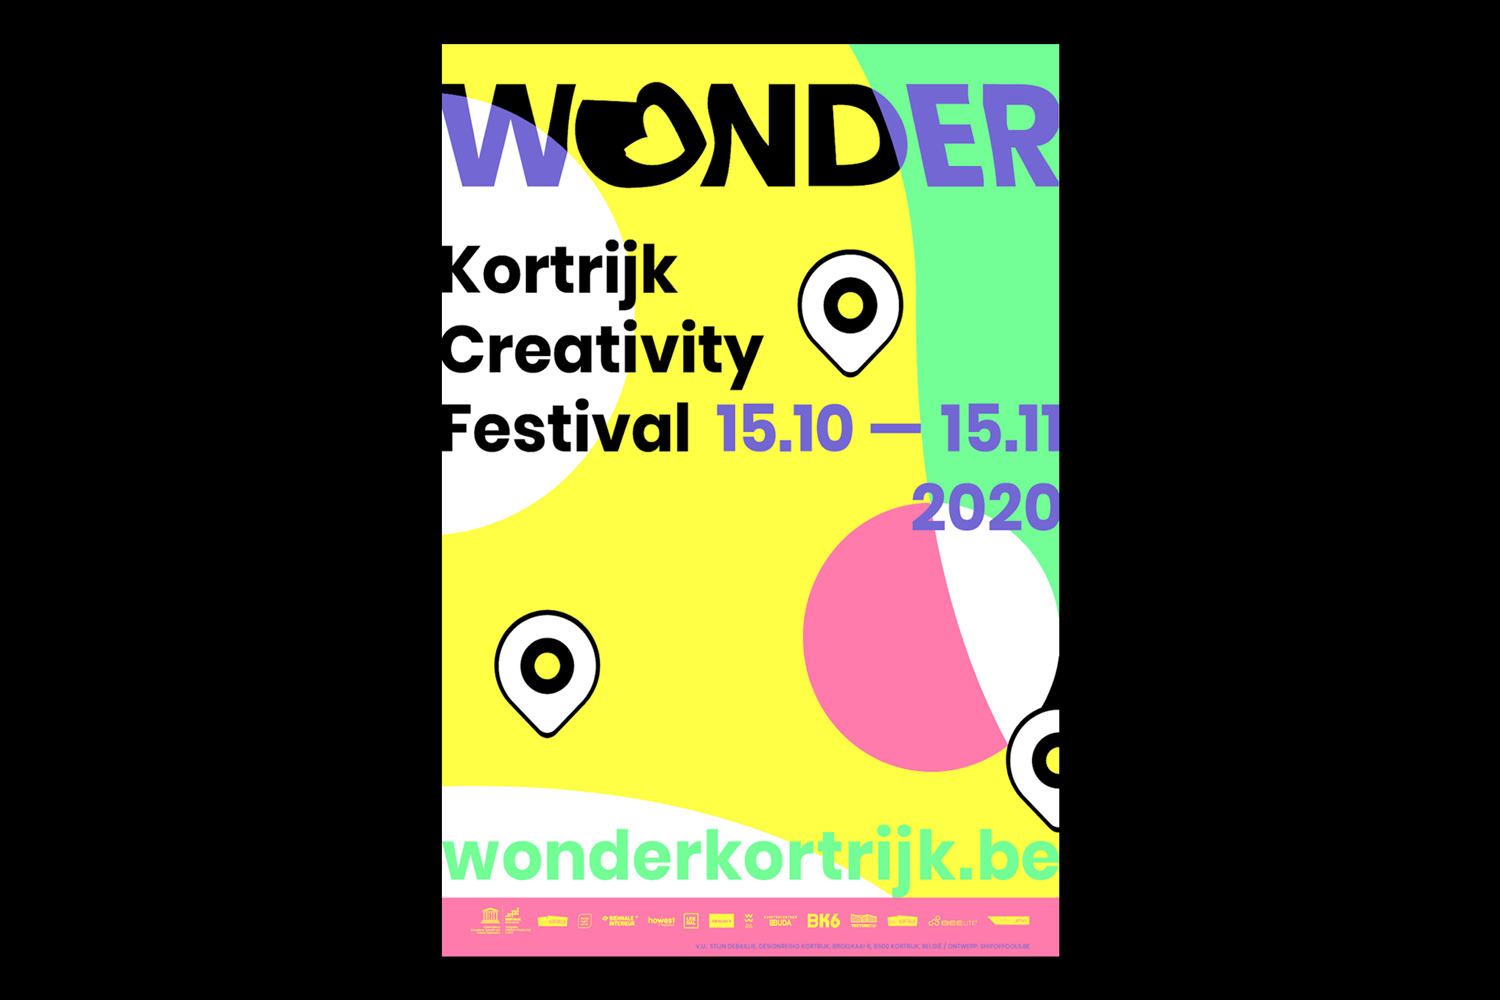 Wonder-Kortrijk-Creativity-Festival-identity-branding-Designregio-Kortrijk-Artist-Proof-Studio-Thomas-De-Ben-8.png